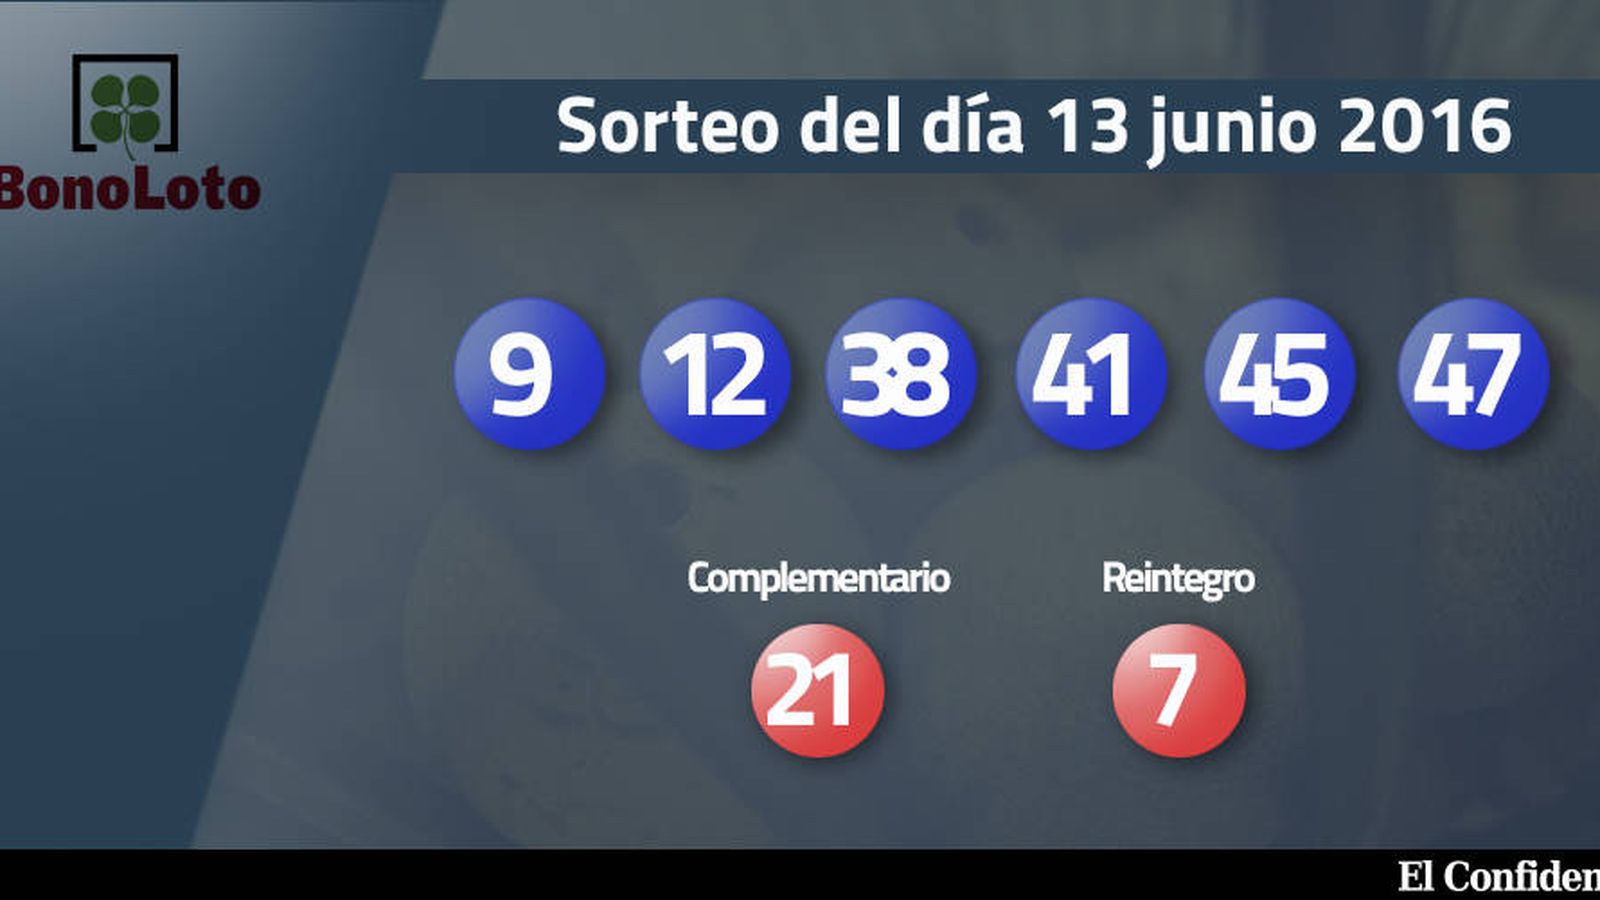 Foto: Resultados del sorteo de la Bonoloto del 13 junio 2016 (EC)